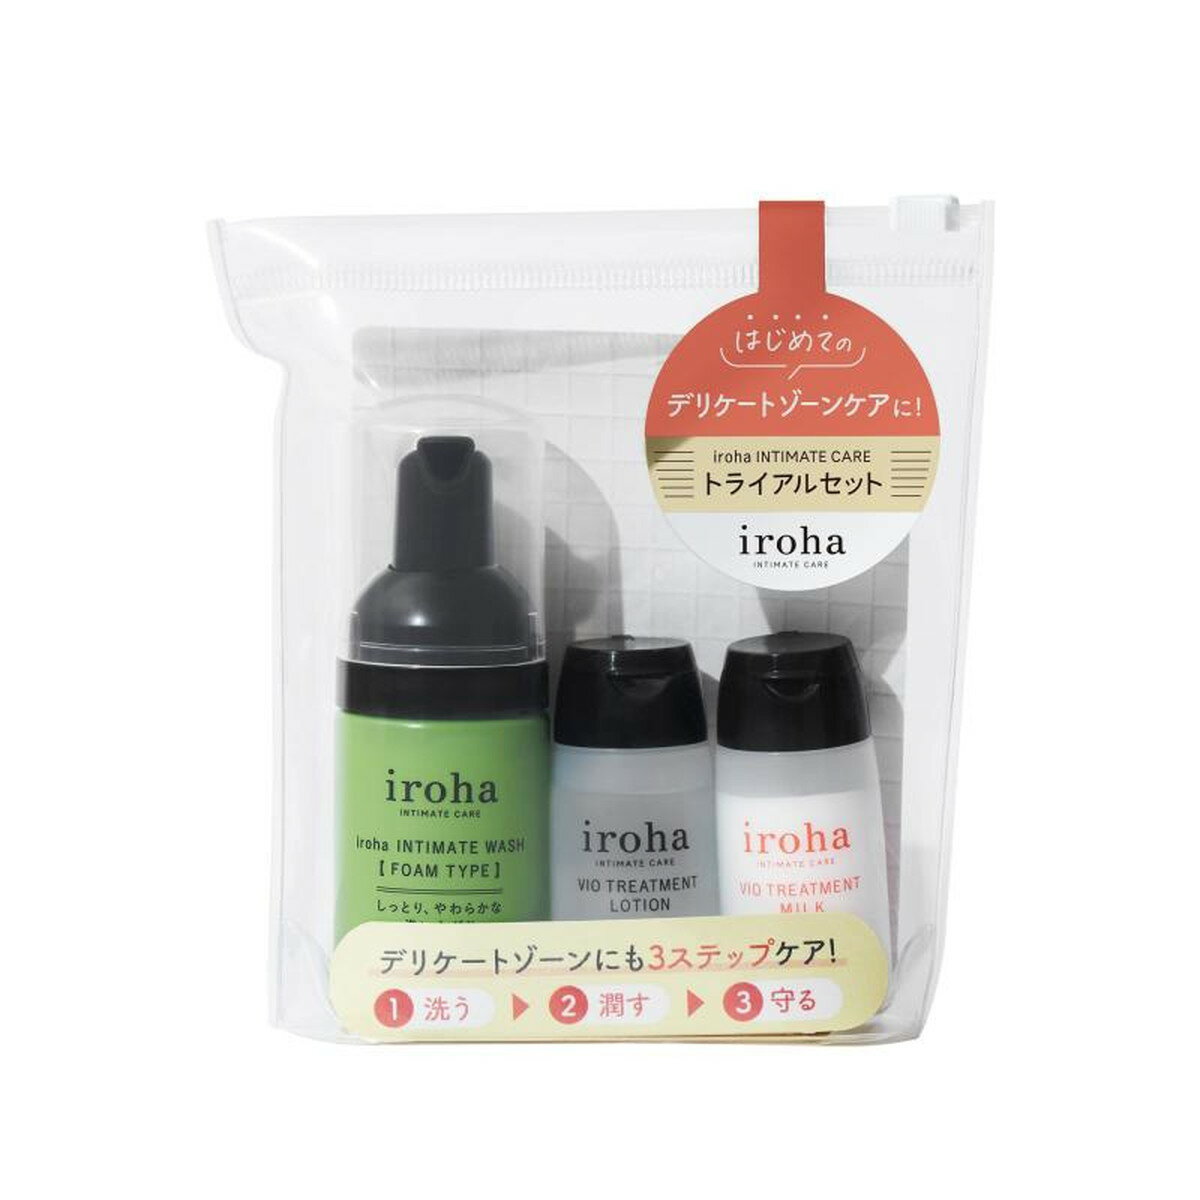 商品名：TENGA iroha INTIMATE インティメート トライアルセット ボディケア内容量：1セットJANコード：4570030978342発売元、製造元、輸入元又は販売元：TENGA原産国：日本区分：化粧品商品番号：103-*0...